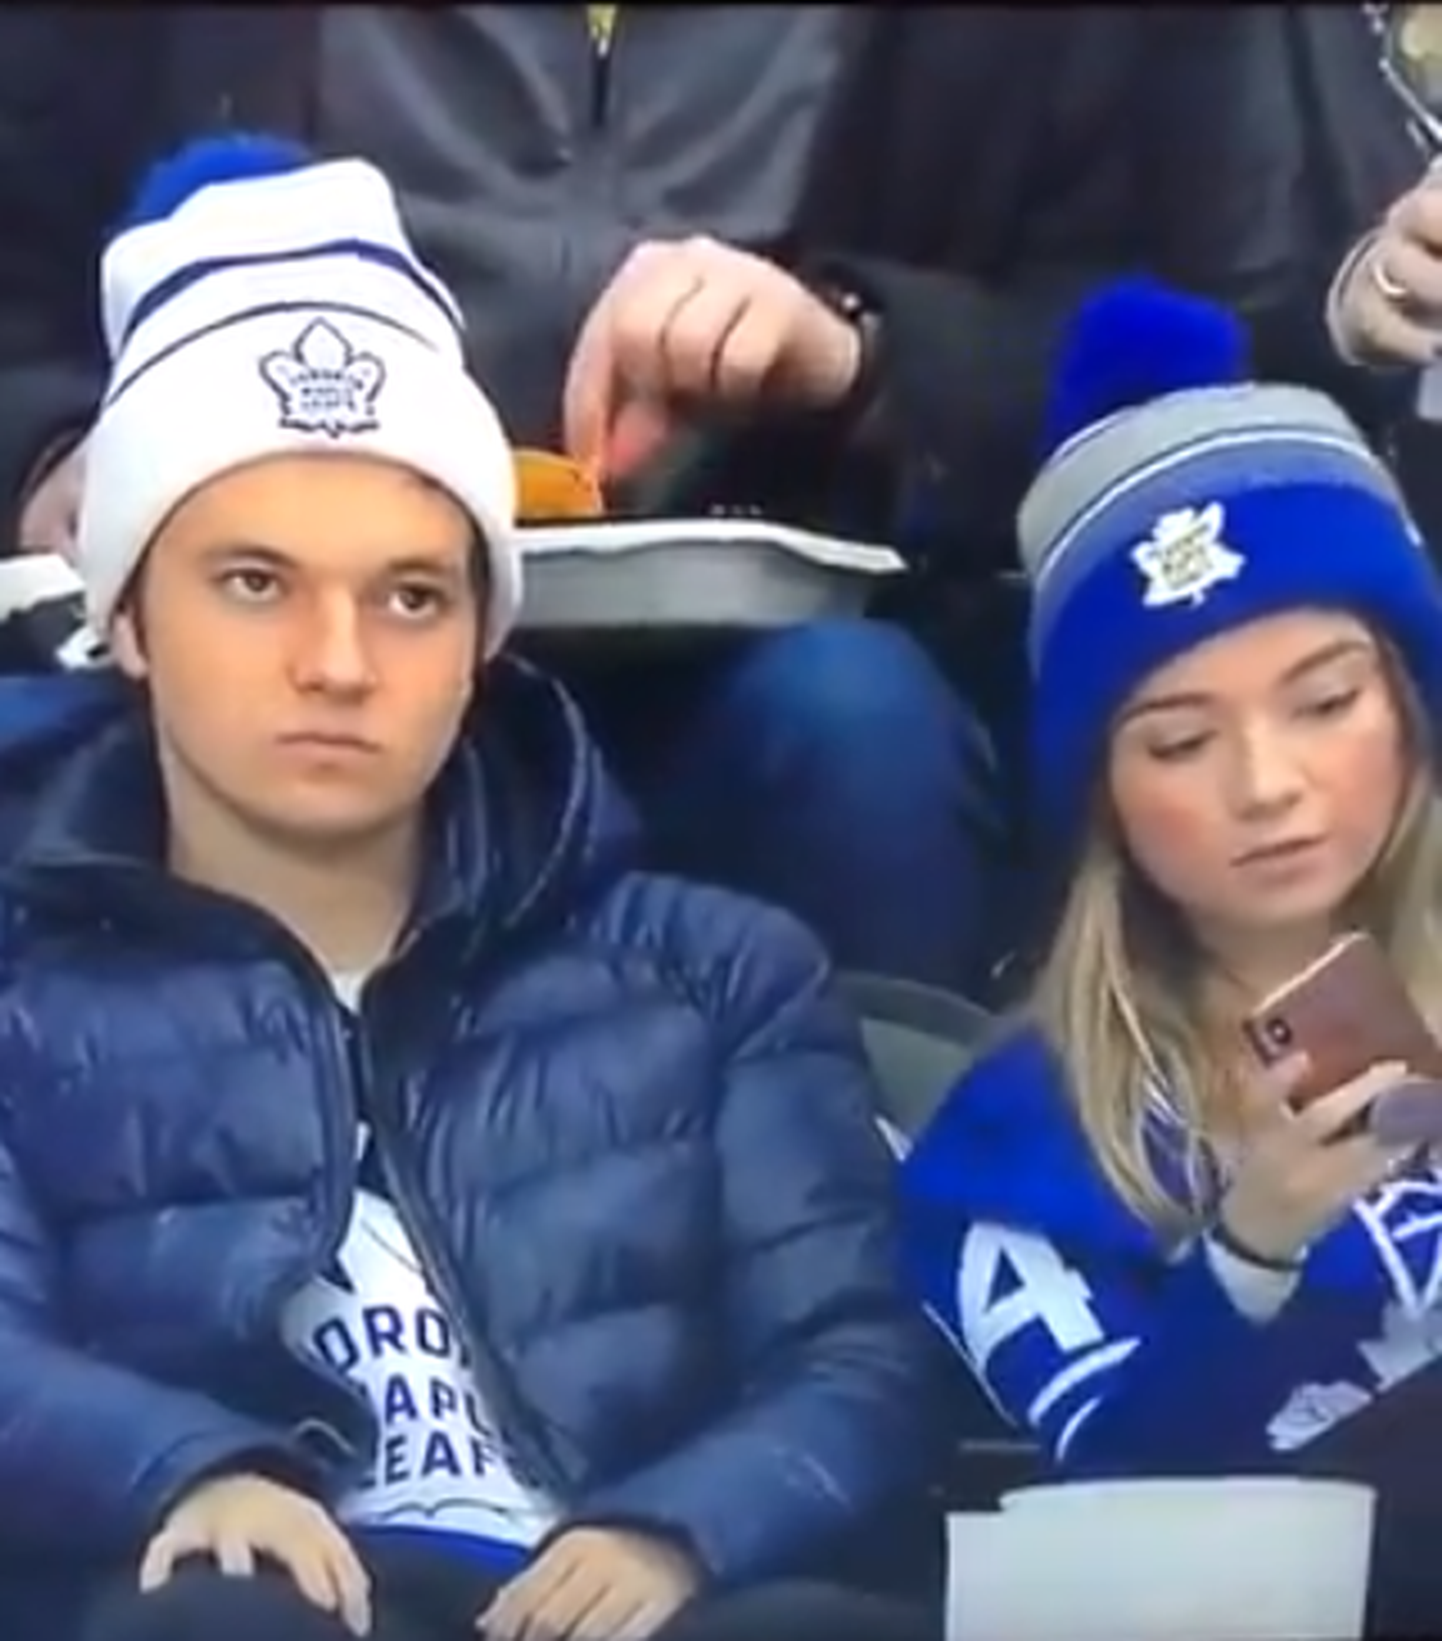 "Maple Leafs" fans